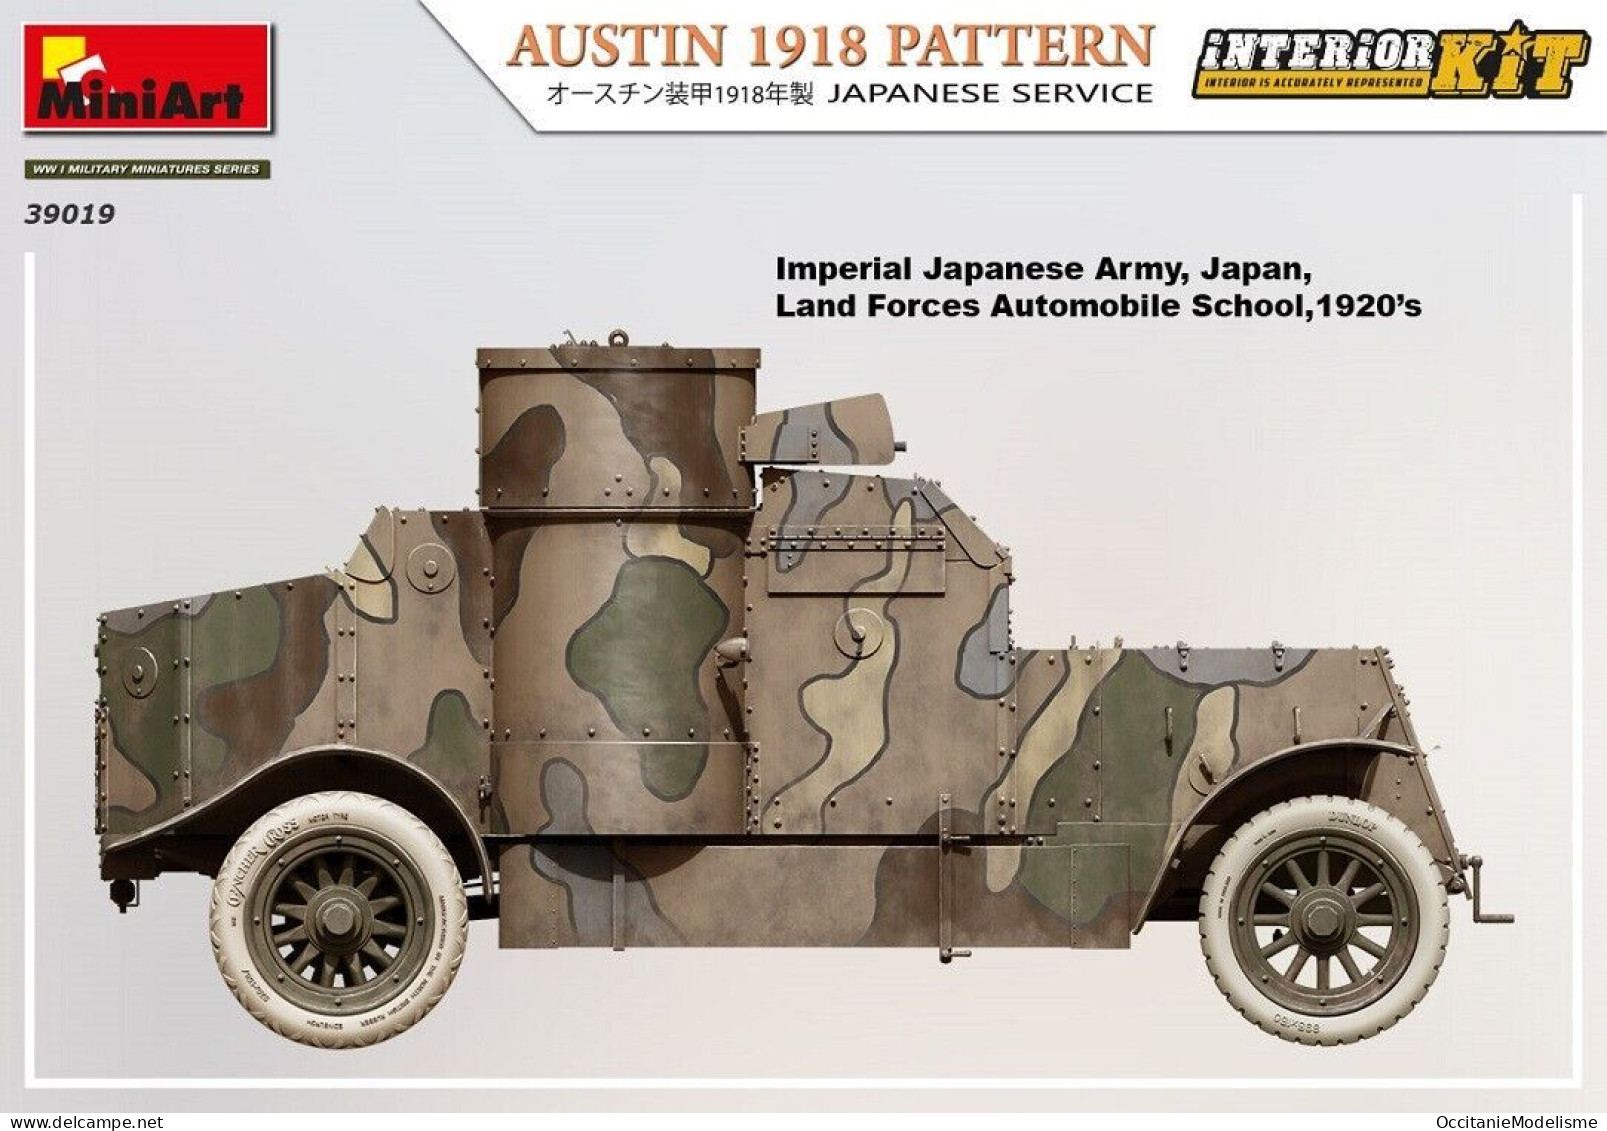 Miniart - AUSTIN 1918 PATTERN Japanese Service Maquette Kit Plastique Réf. 39019 Neuf NBO 1/35 - Véhicules Militaires